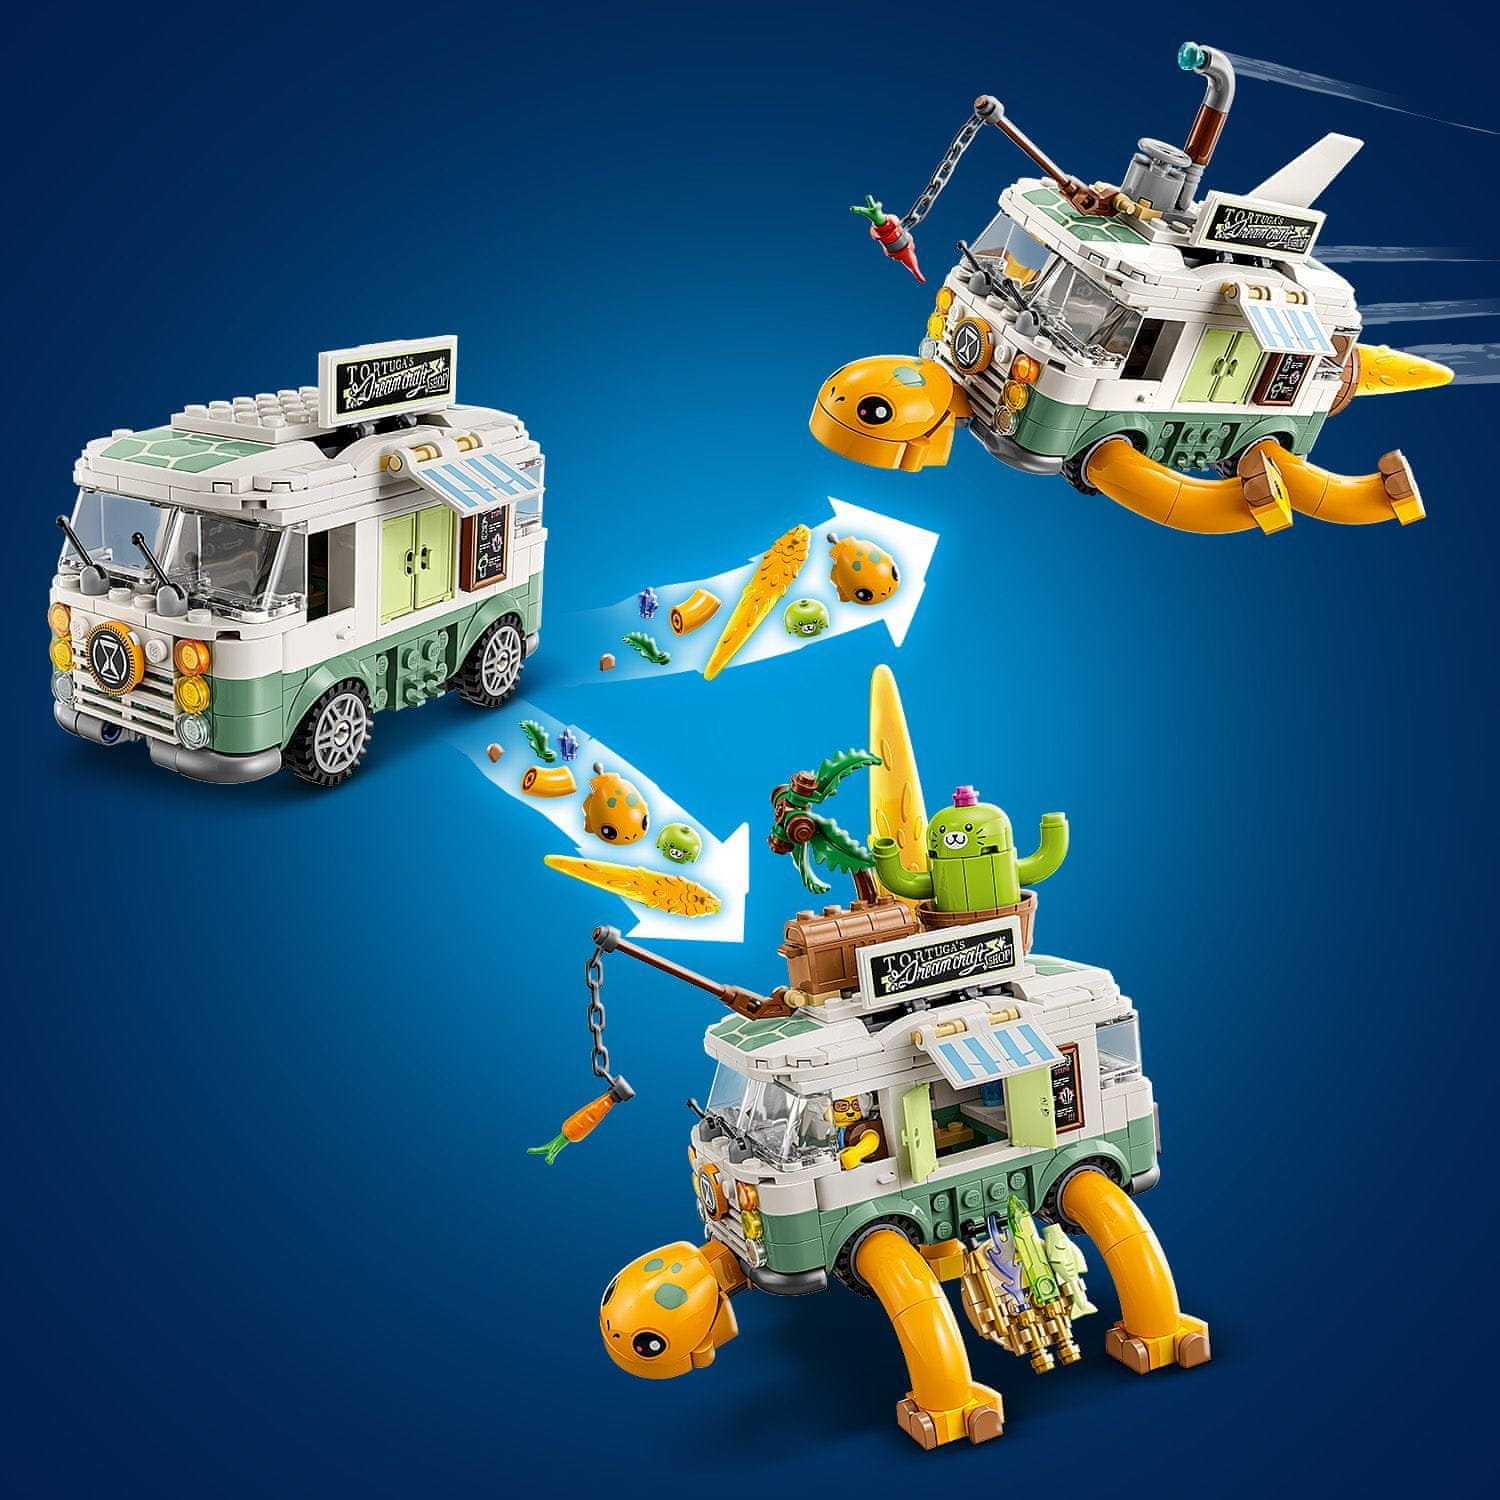 LEGO DREAMZzz 71456 Želví dodávka paní Castillové